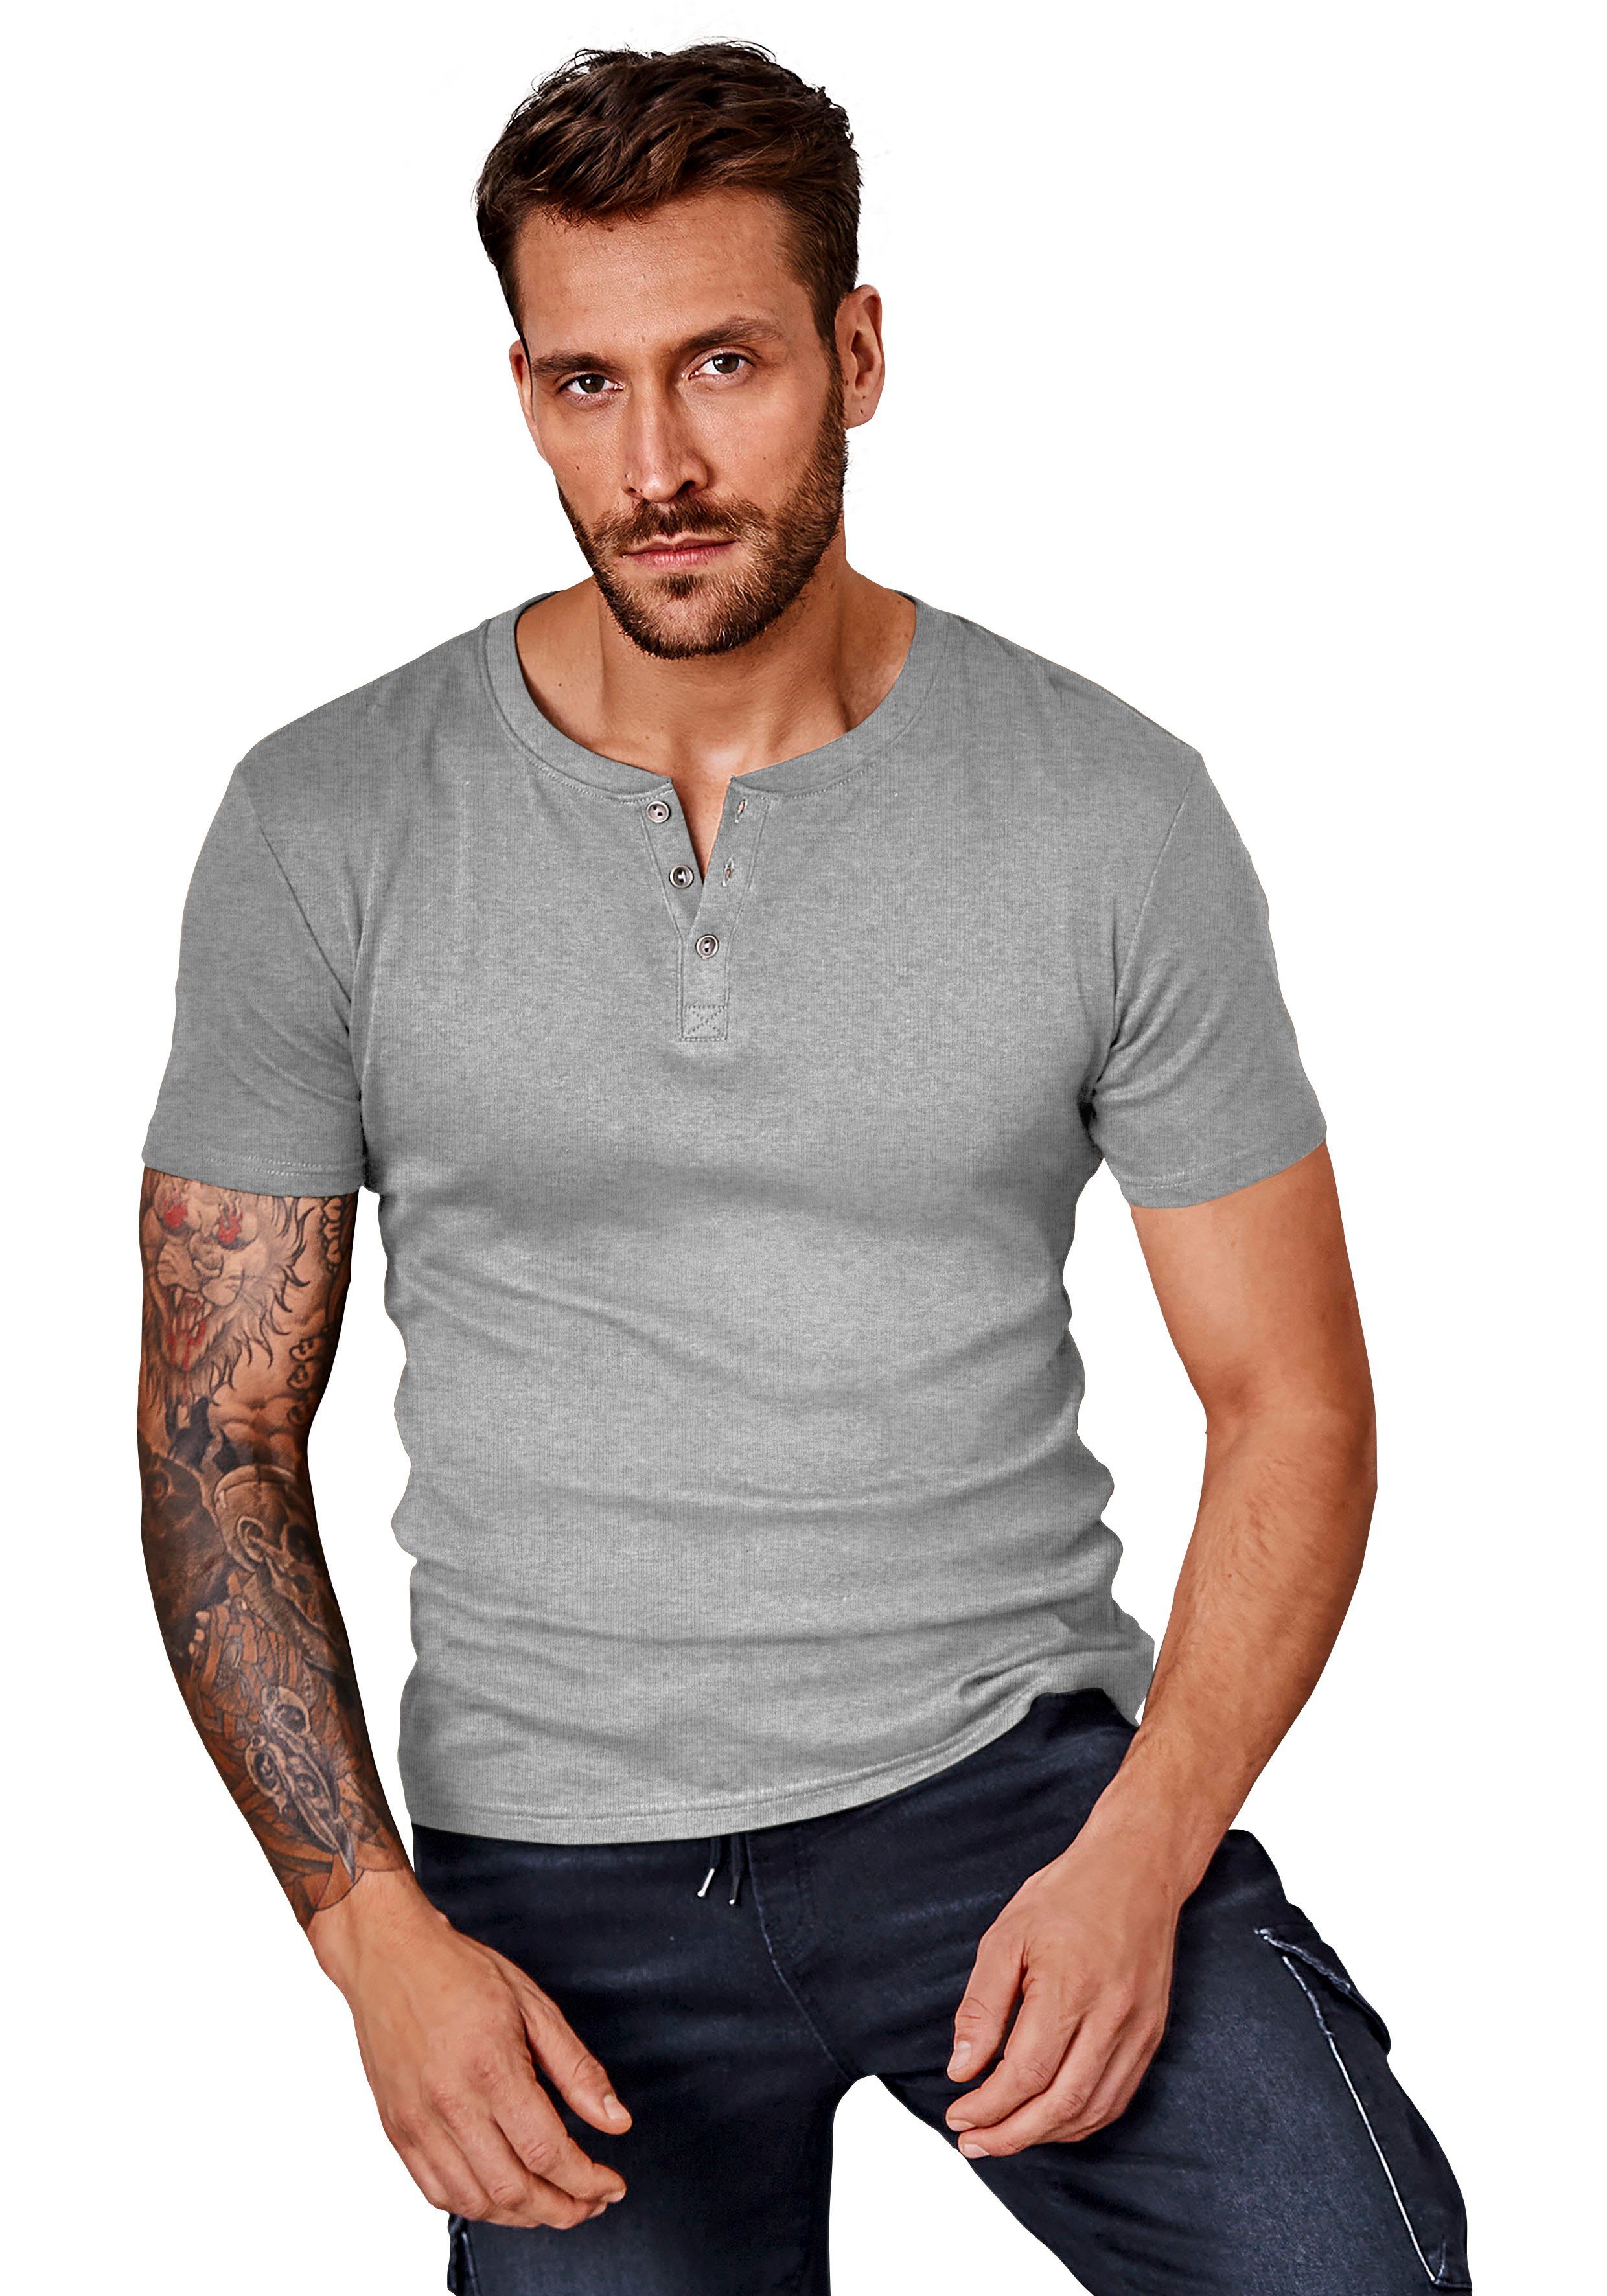 H.I.S T-Shirt (Packung) mit Knopfleiste als aufwendiger perfekt Unterziehshirt grau-meliert